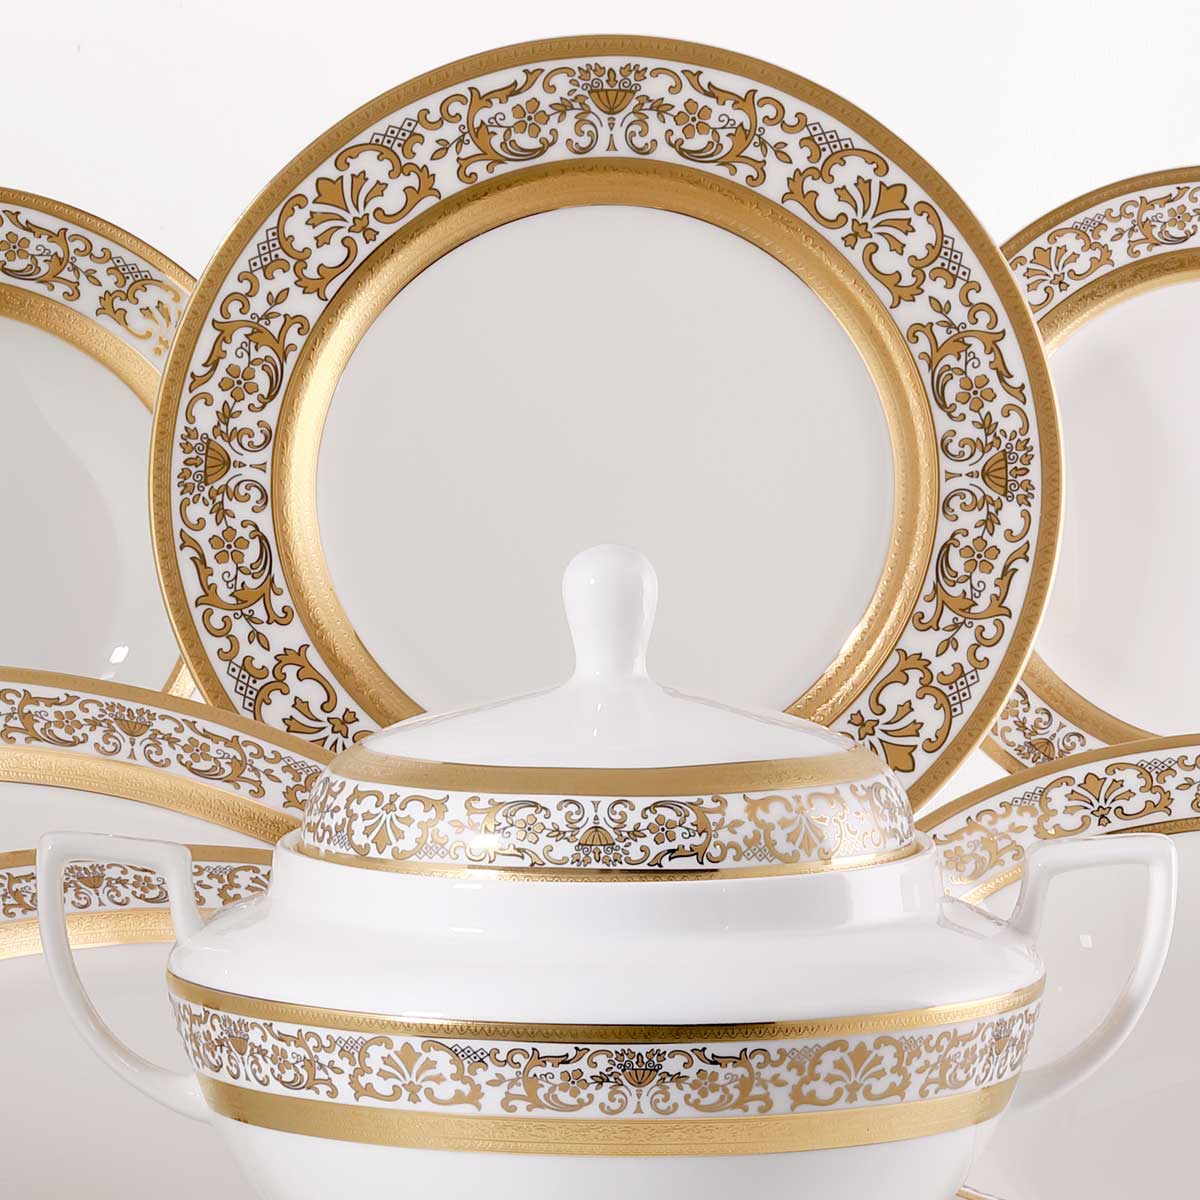 Completo porcellana tavola in stile classico oro zecchino per la sala da pranzo - Prestige